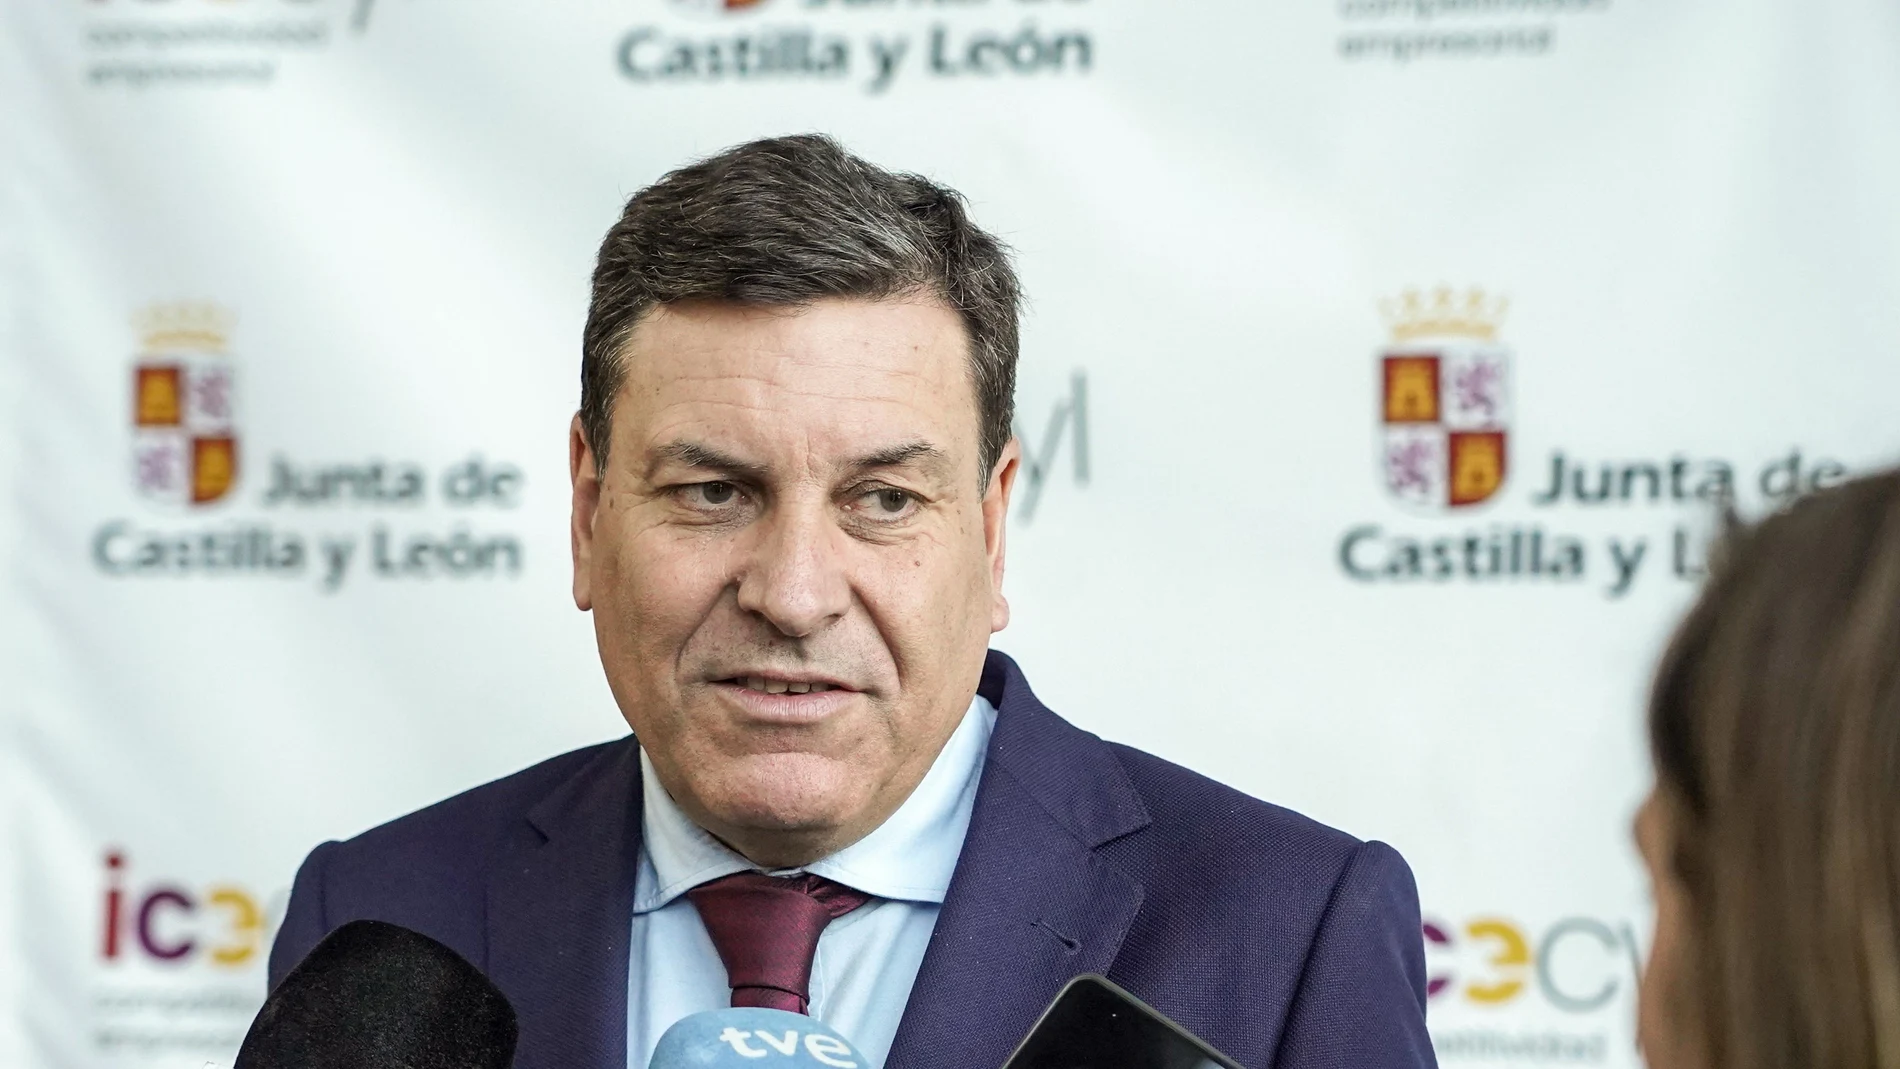 El consejero de Economíay Hacienda, Carlos Fernández Carriedo, atiende a los medios